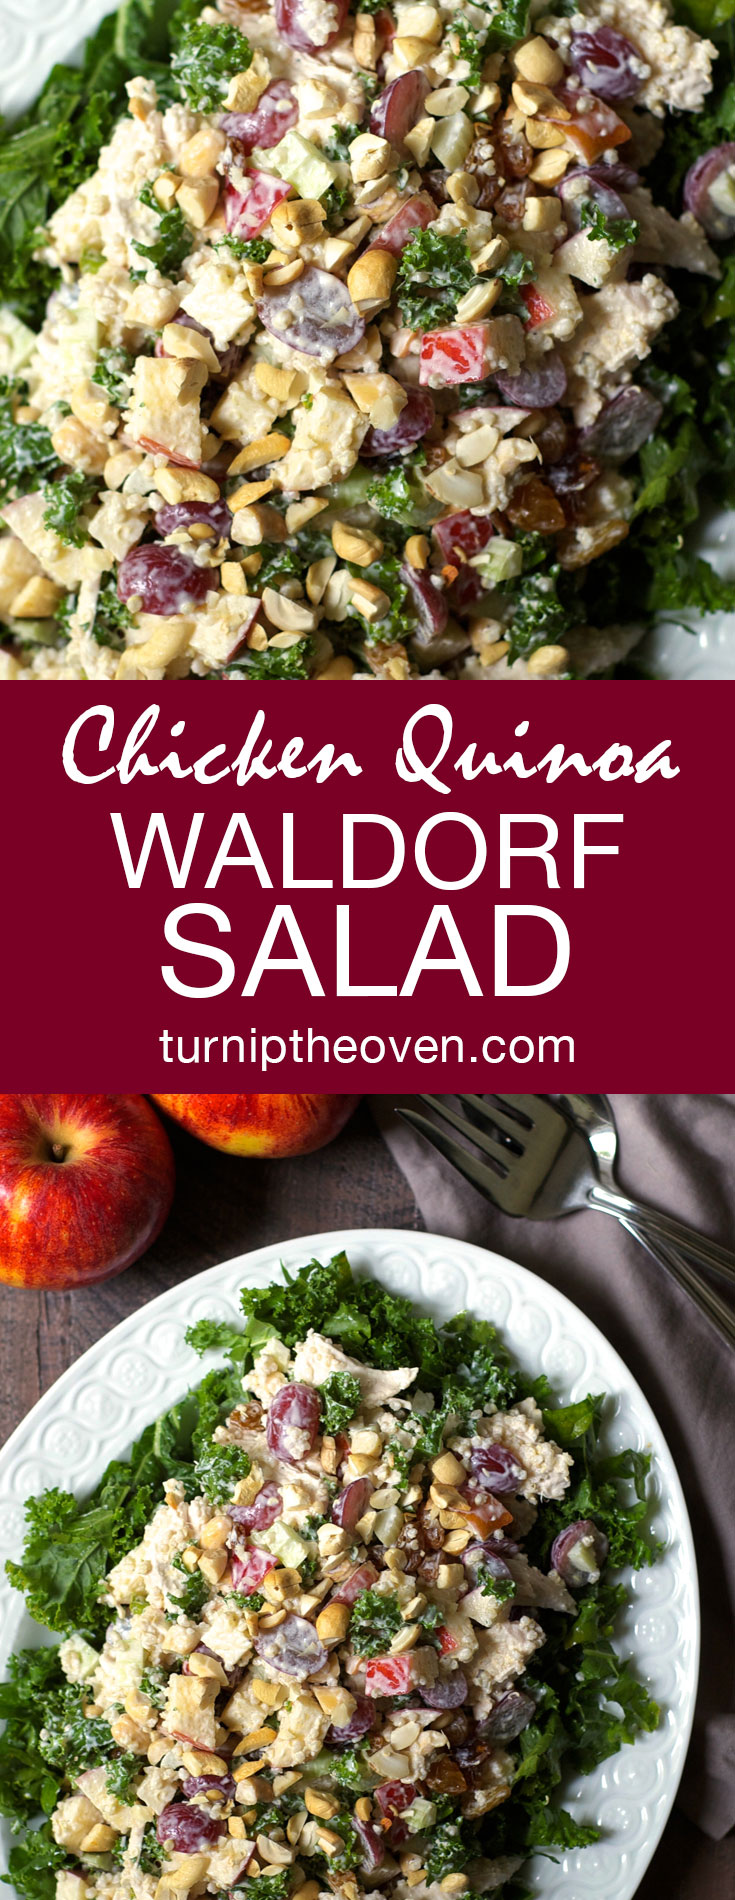 Chicken Quinoa Waldorf Salad with Kale